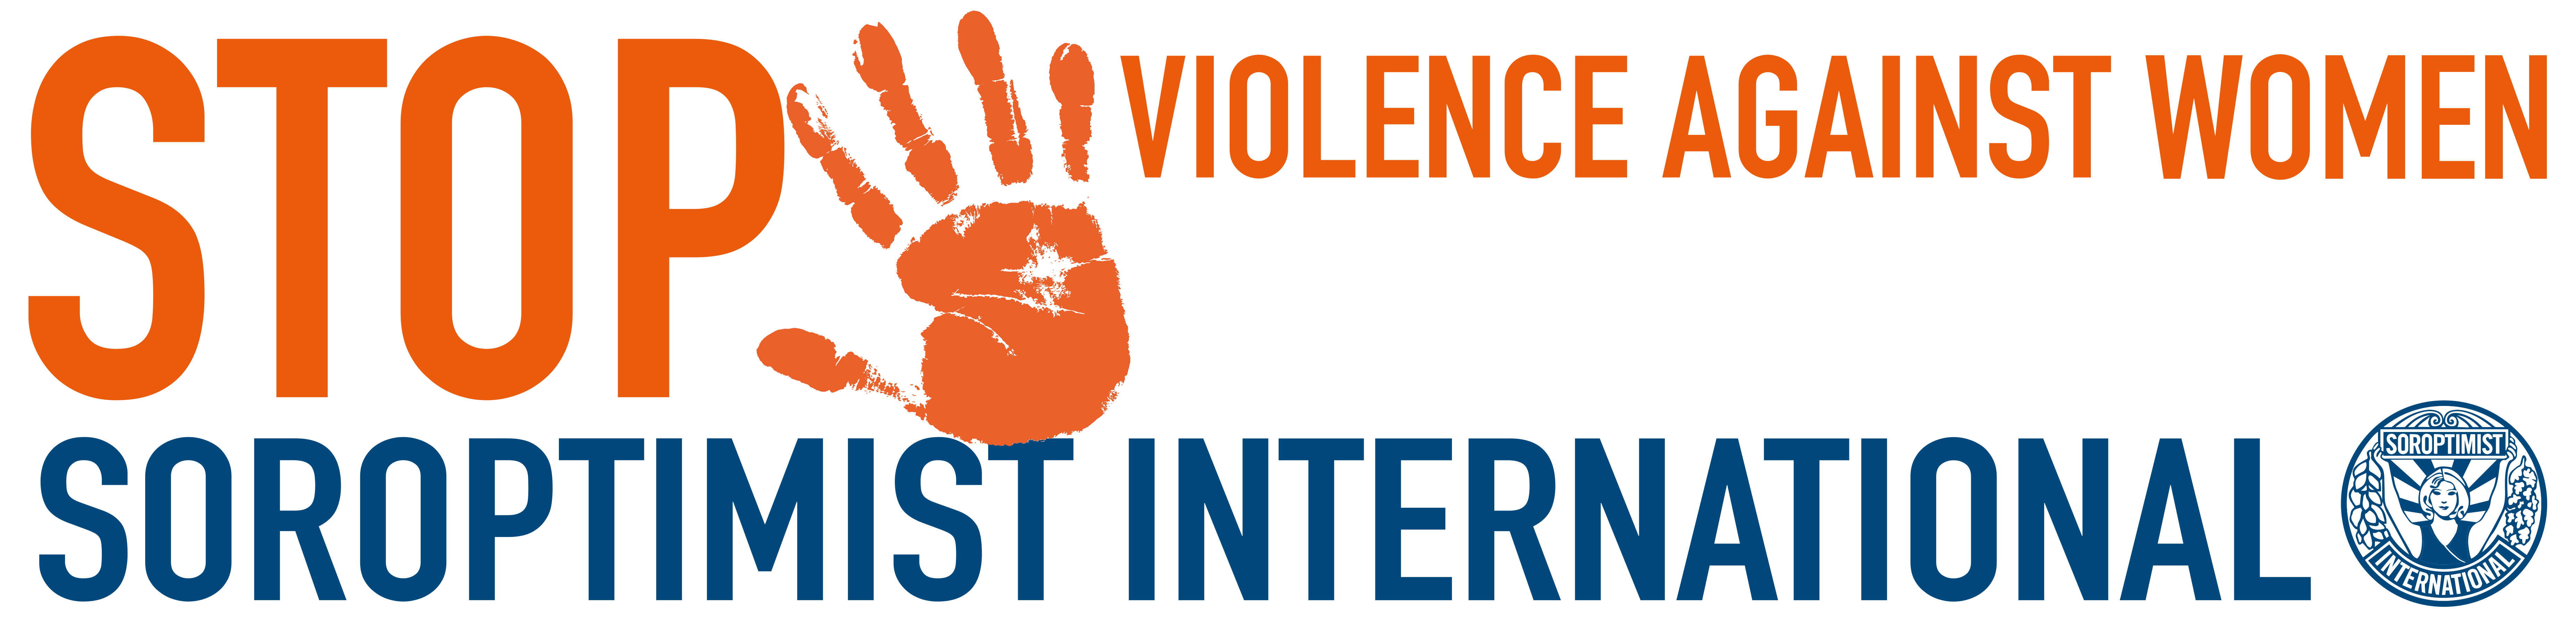 De Orange Paper is een uitgave van Soroptimist Club Hilversum e.o. tijdens de Orange the World Campagne - Sto geweld tgen vrouwen - van 25-11-2021 tm 10-12-2021